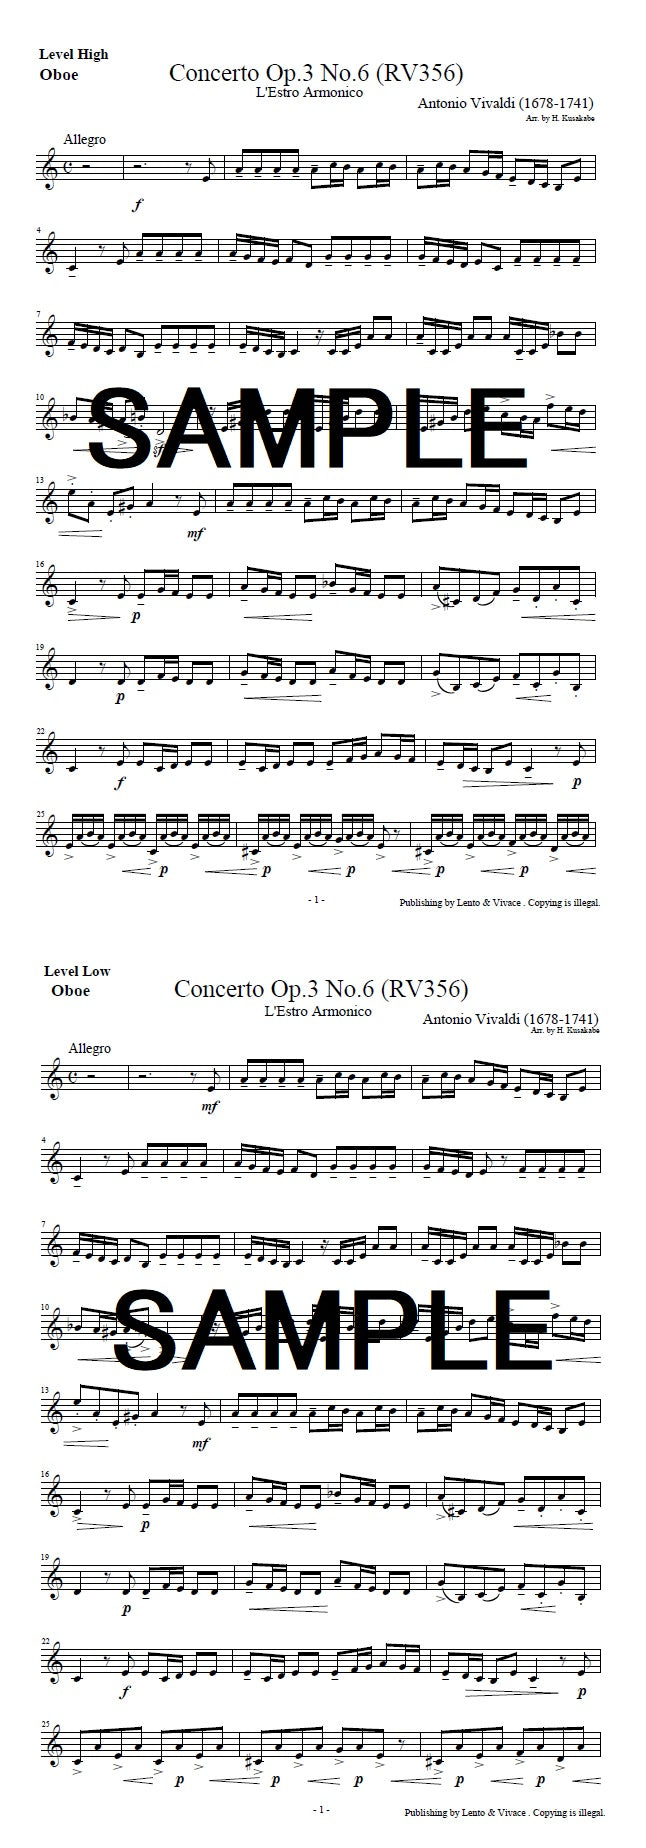 Antonio Vivaldi "Concerto in A Minor, L'estro Armonic Op.3 No. 6"